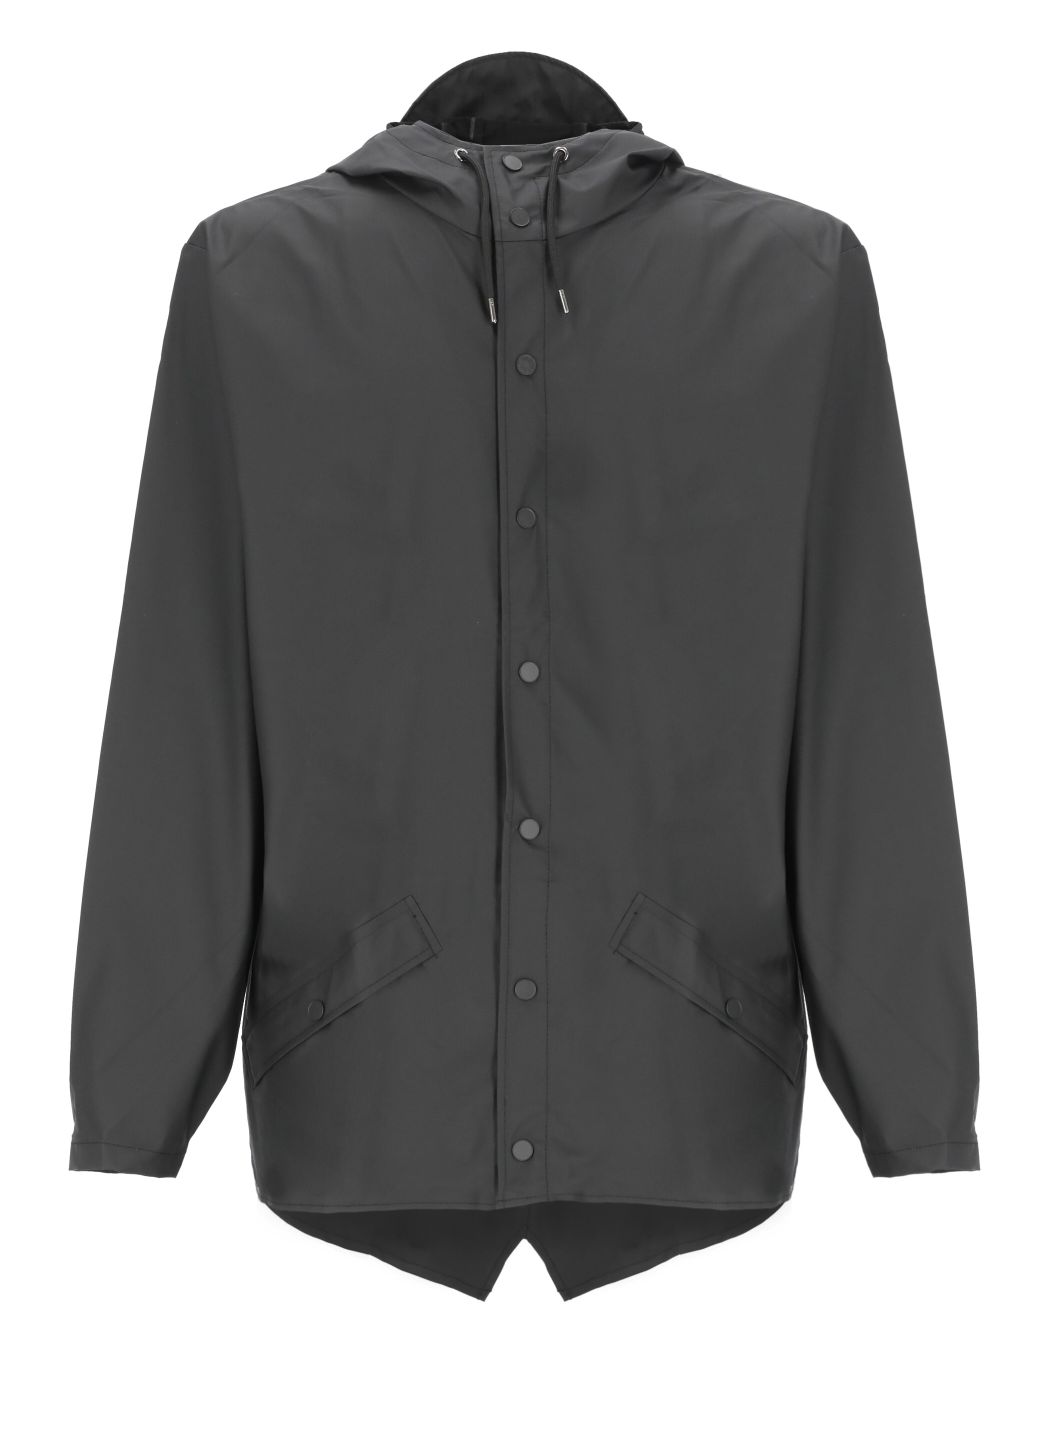 Jacket raincoat